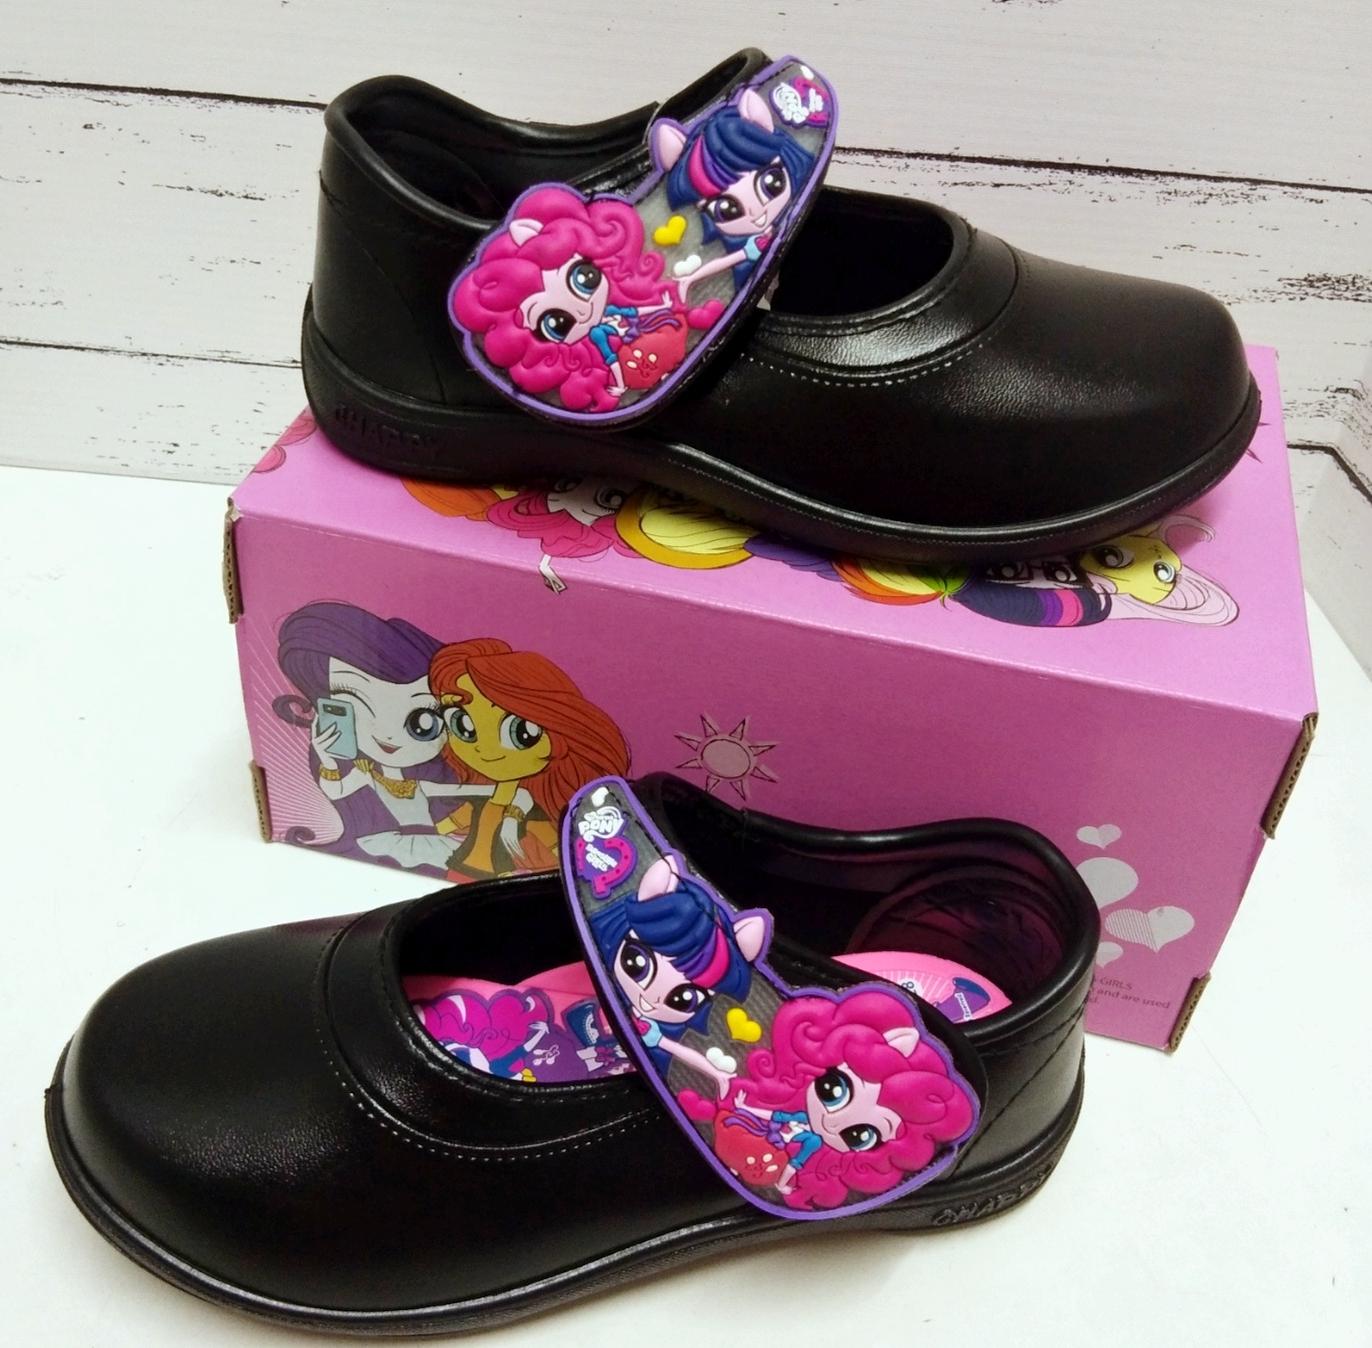 SCPPlaza รองเท้านักเรียน รองเท้าเด็กอนุบาลหญิง Pony โพนี่ PN320 มีไฟกระพริบ รุ่นใหม่ล่าสุด ลดราคาพิเศษ Sale ส่งเคอรี่